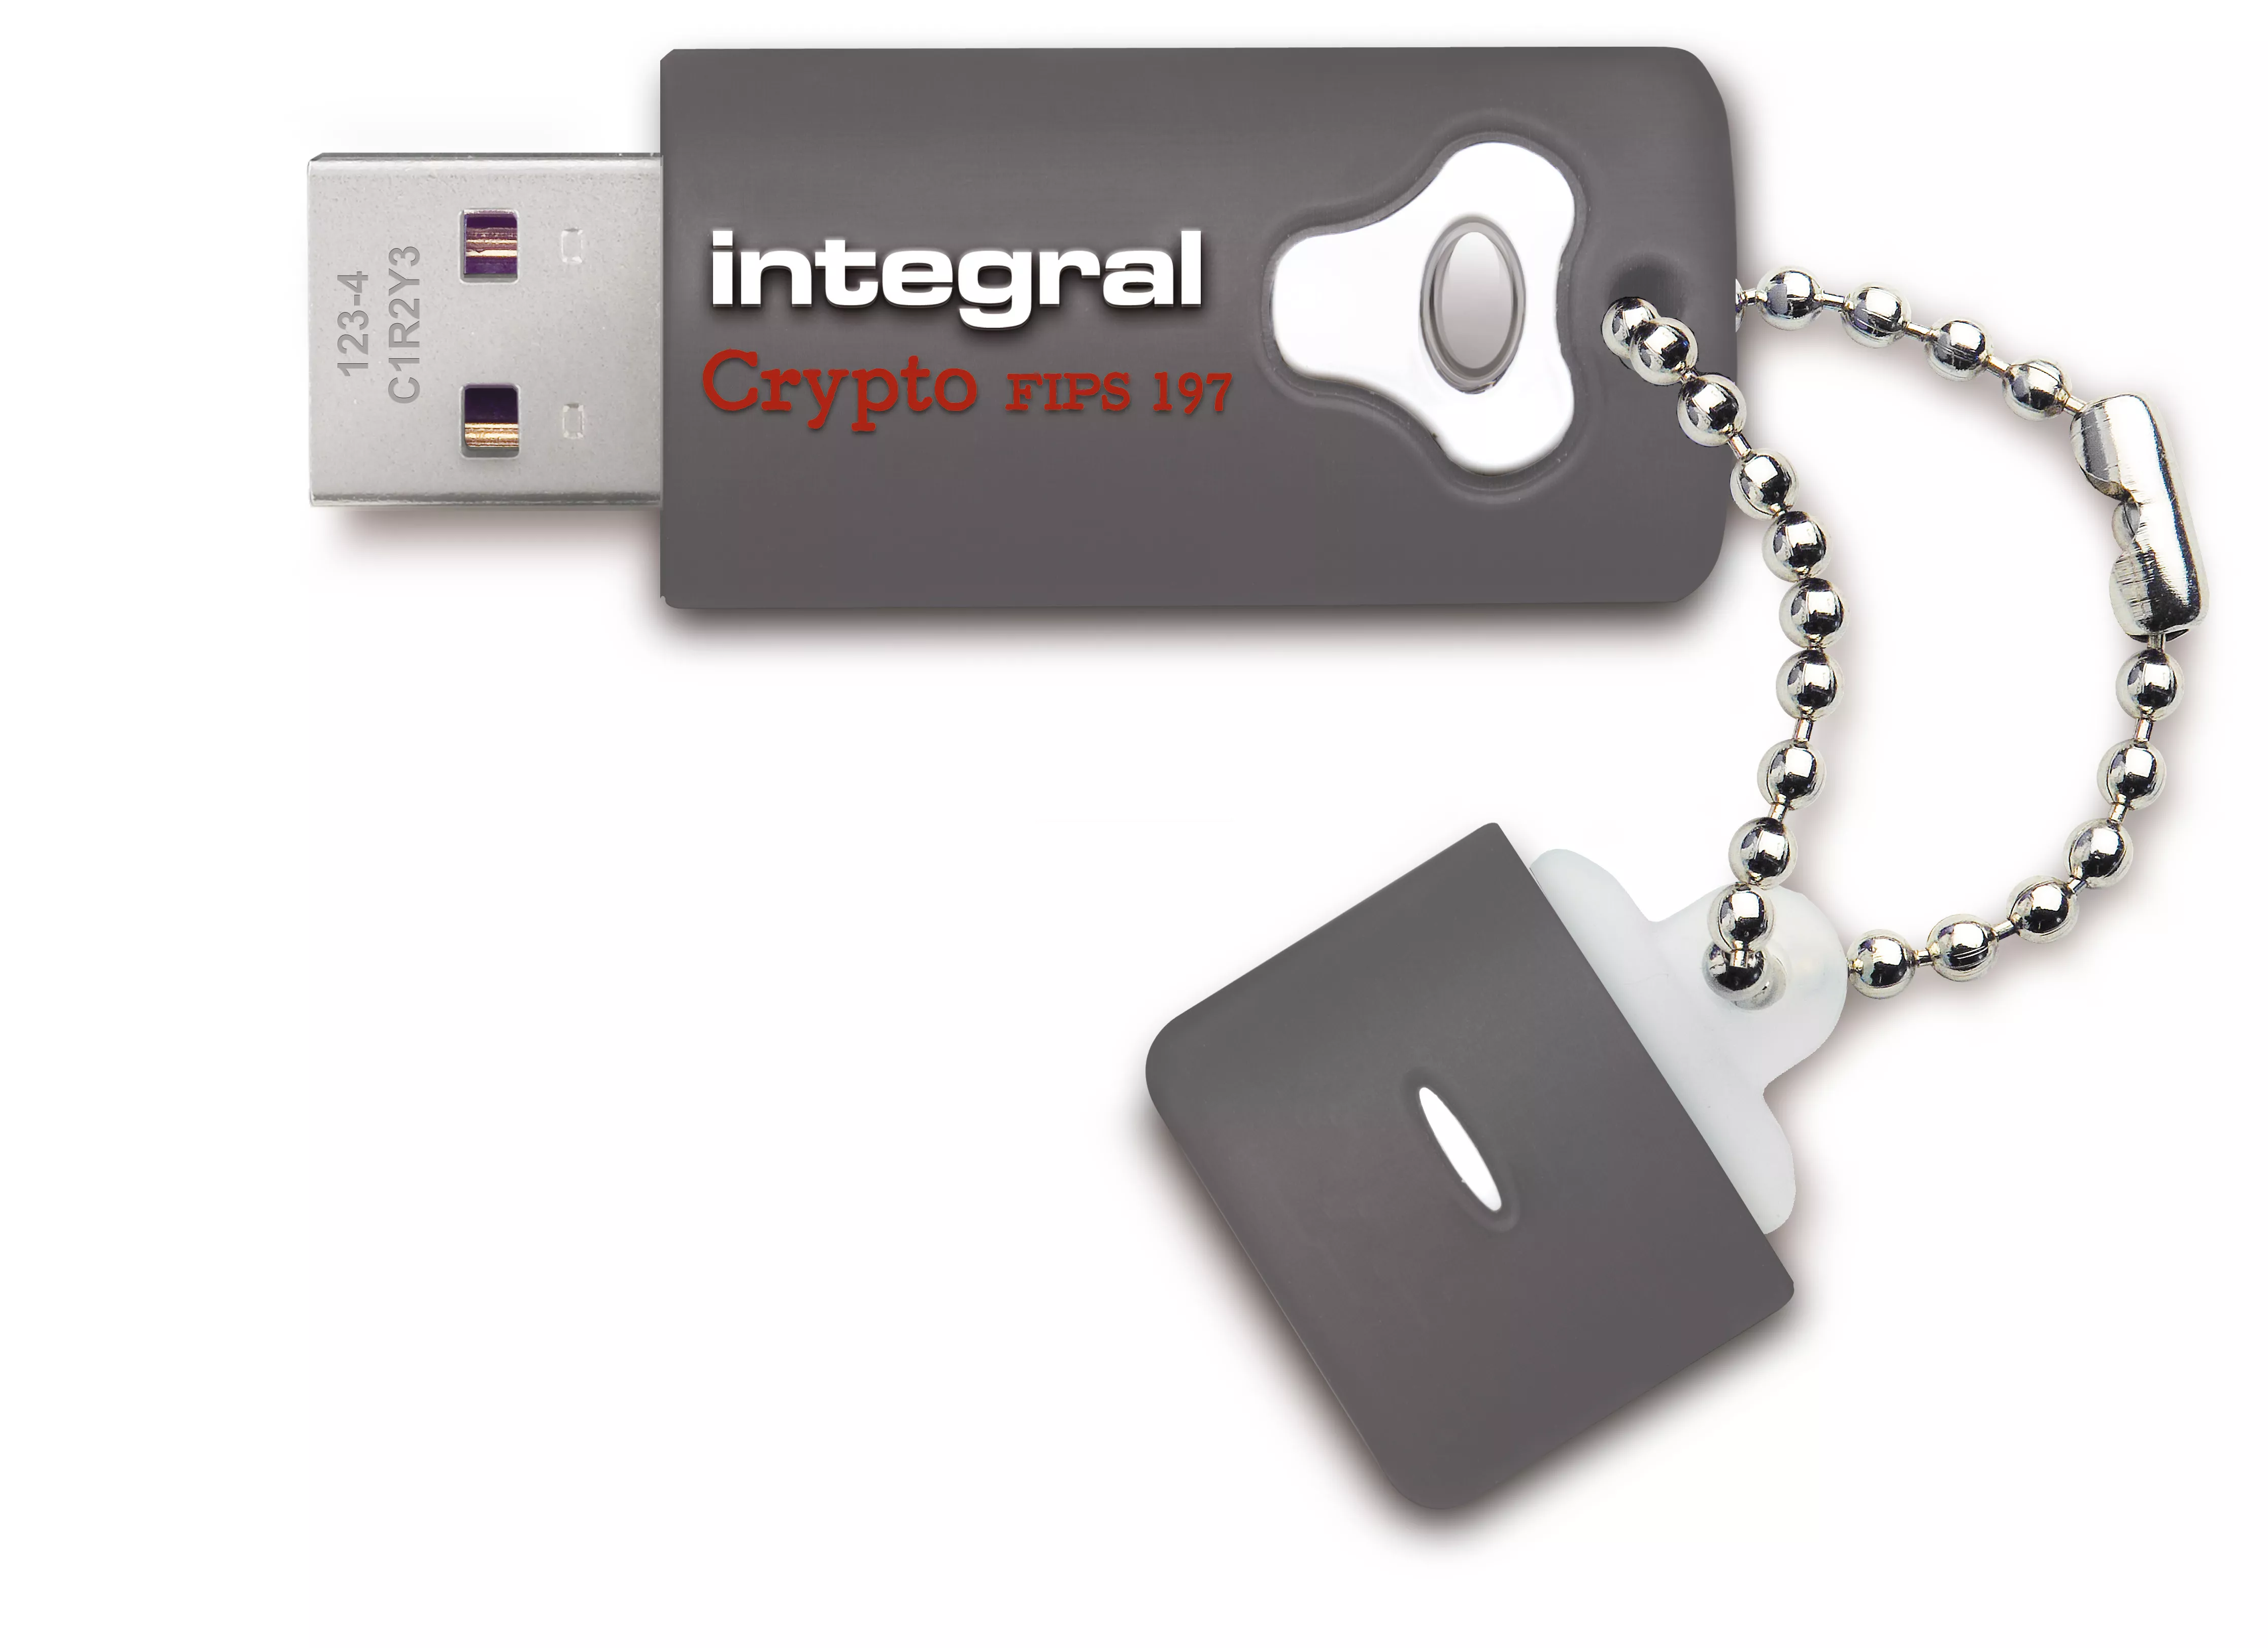 Achat Integral 16GB Crypto Drive FIPS 197 Encrypted USB 3.0 et autres produits de la marque Integral